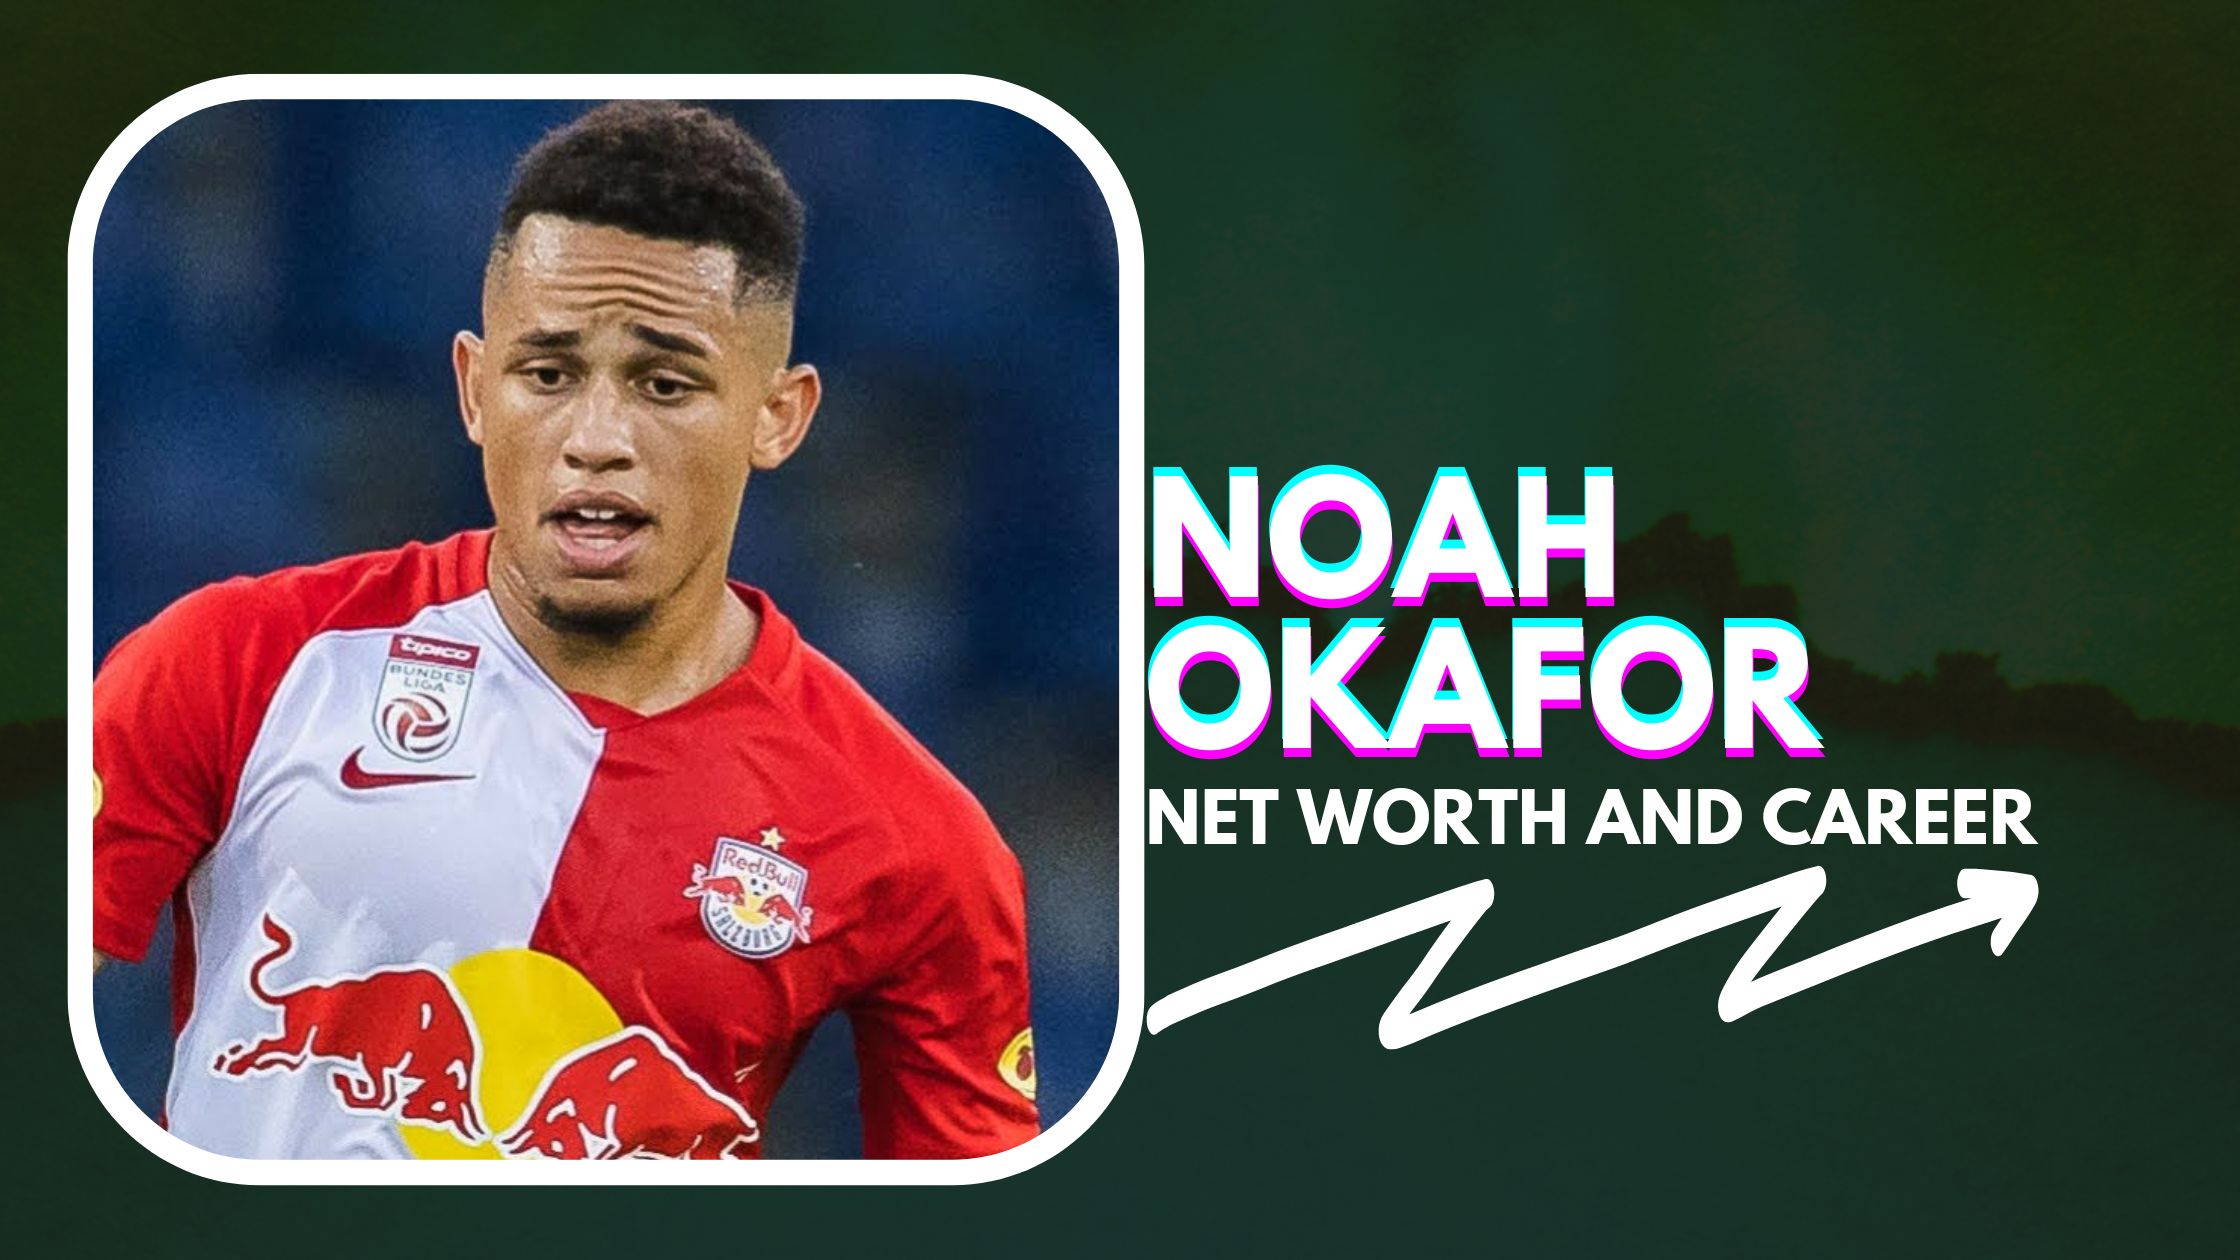 Noah Okafor Net Worth and Biography